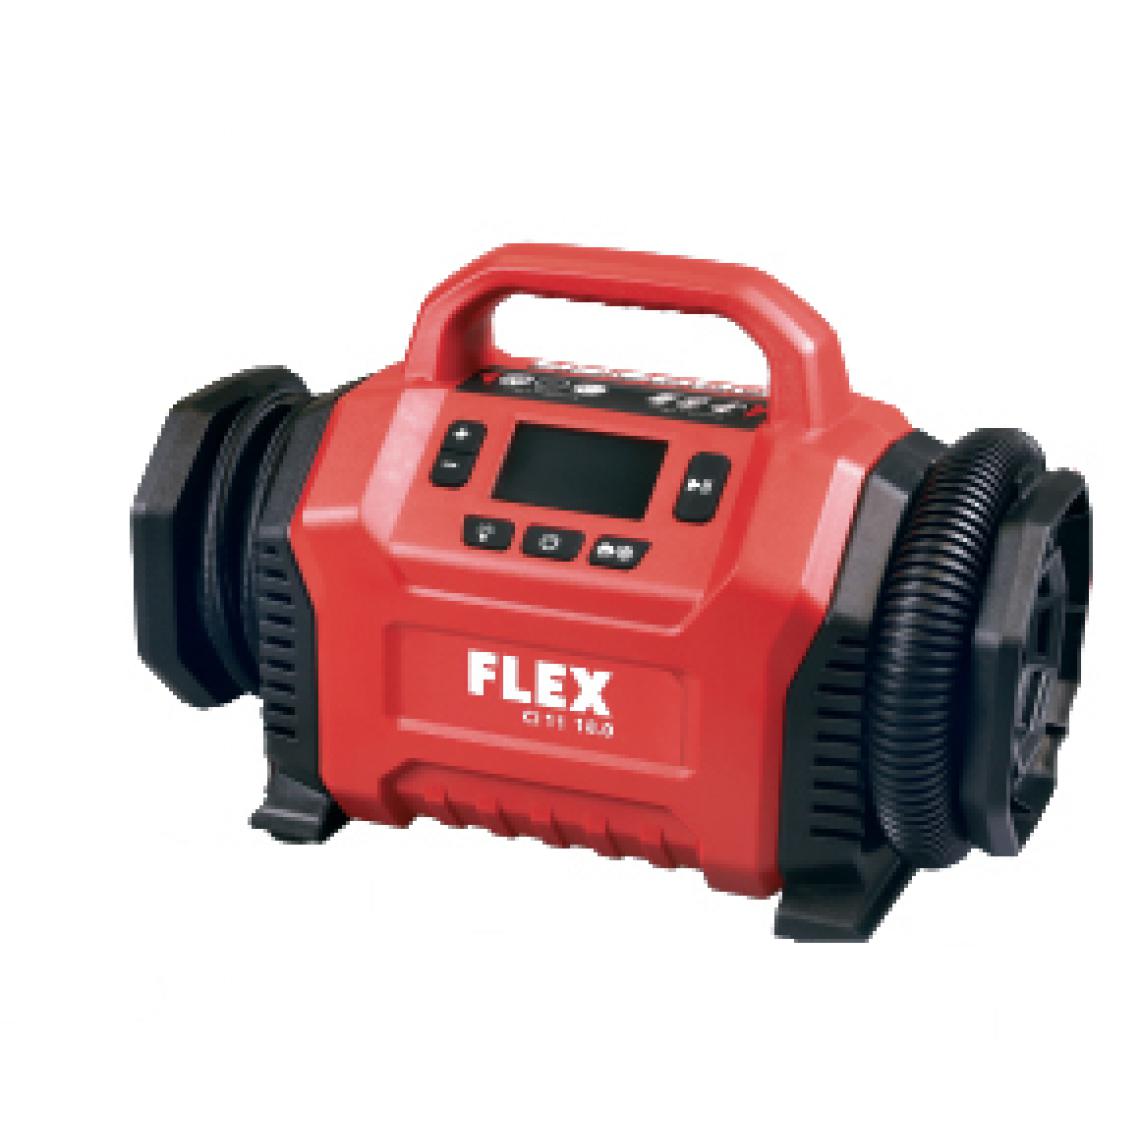 Flex - Gonfleur sur batterie CI 11 18.0 / 12 V FLEX - 506648 - Packs d'outillage électroportatif